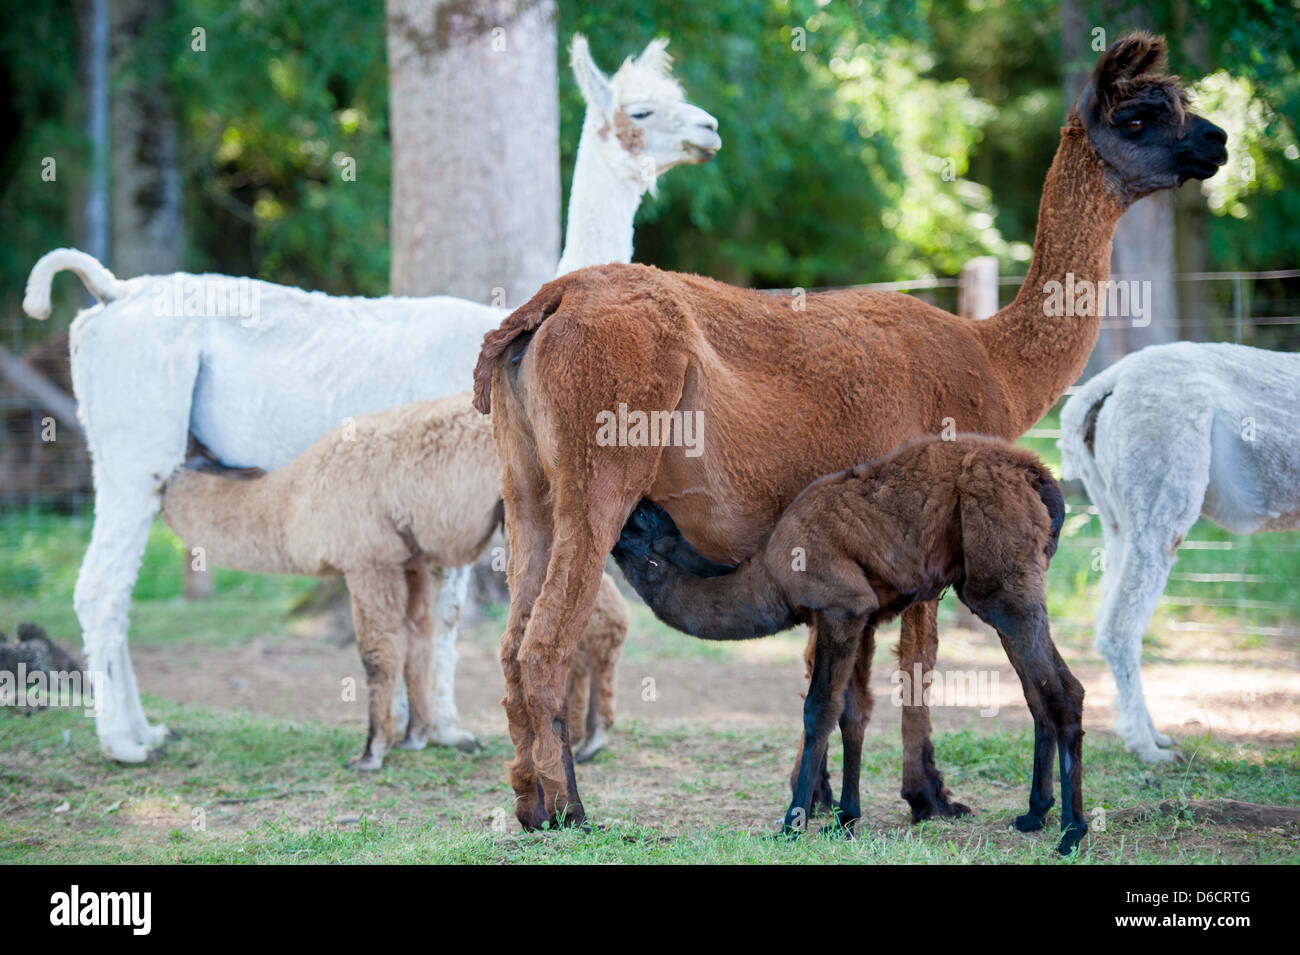 Mama llama bébé de soins à l'élevage de lamas et alpagas situé à environ 30 km à l'est de Temuco au Chili Banque D'Images